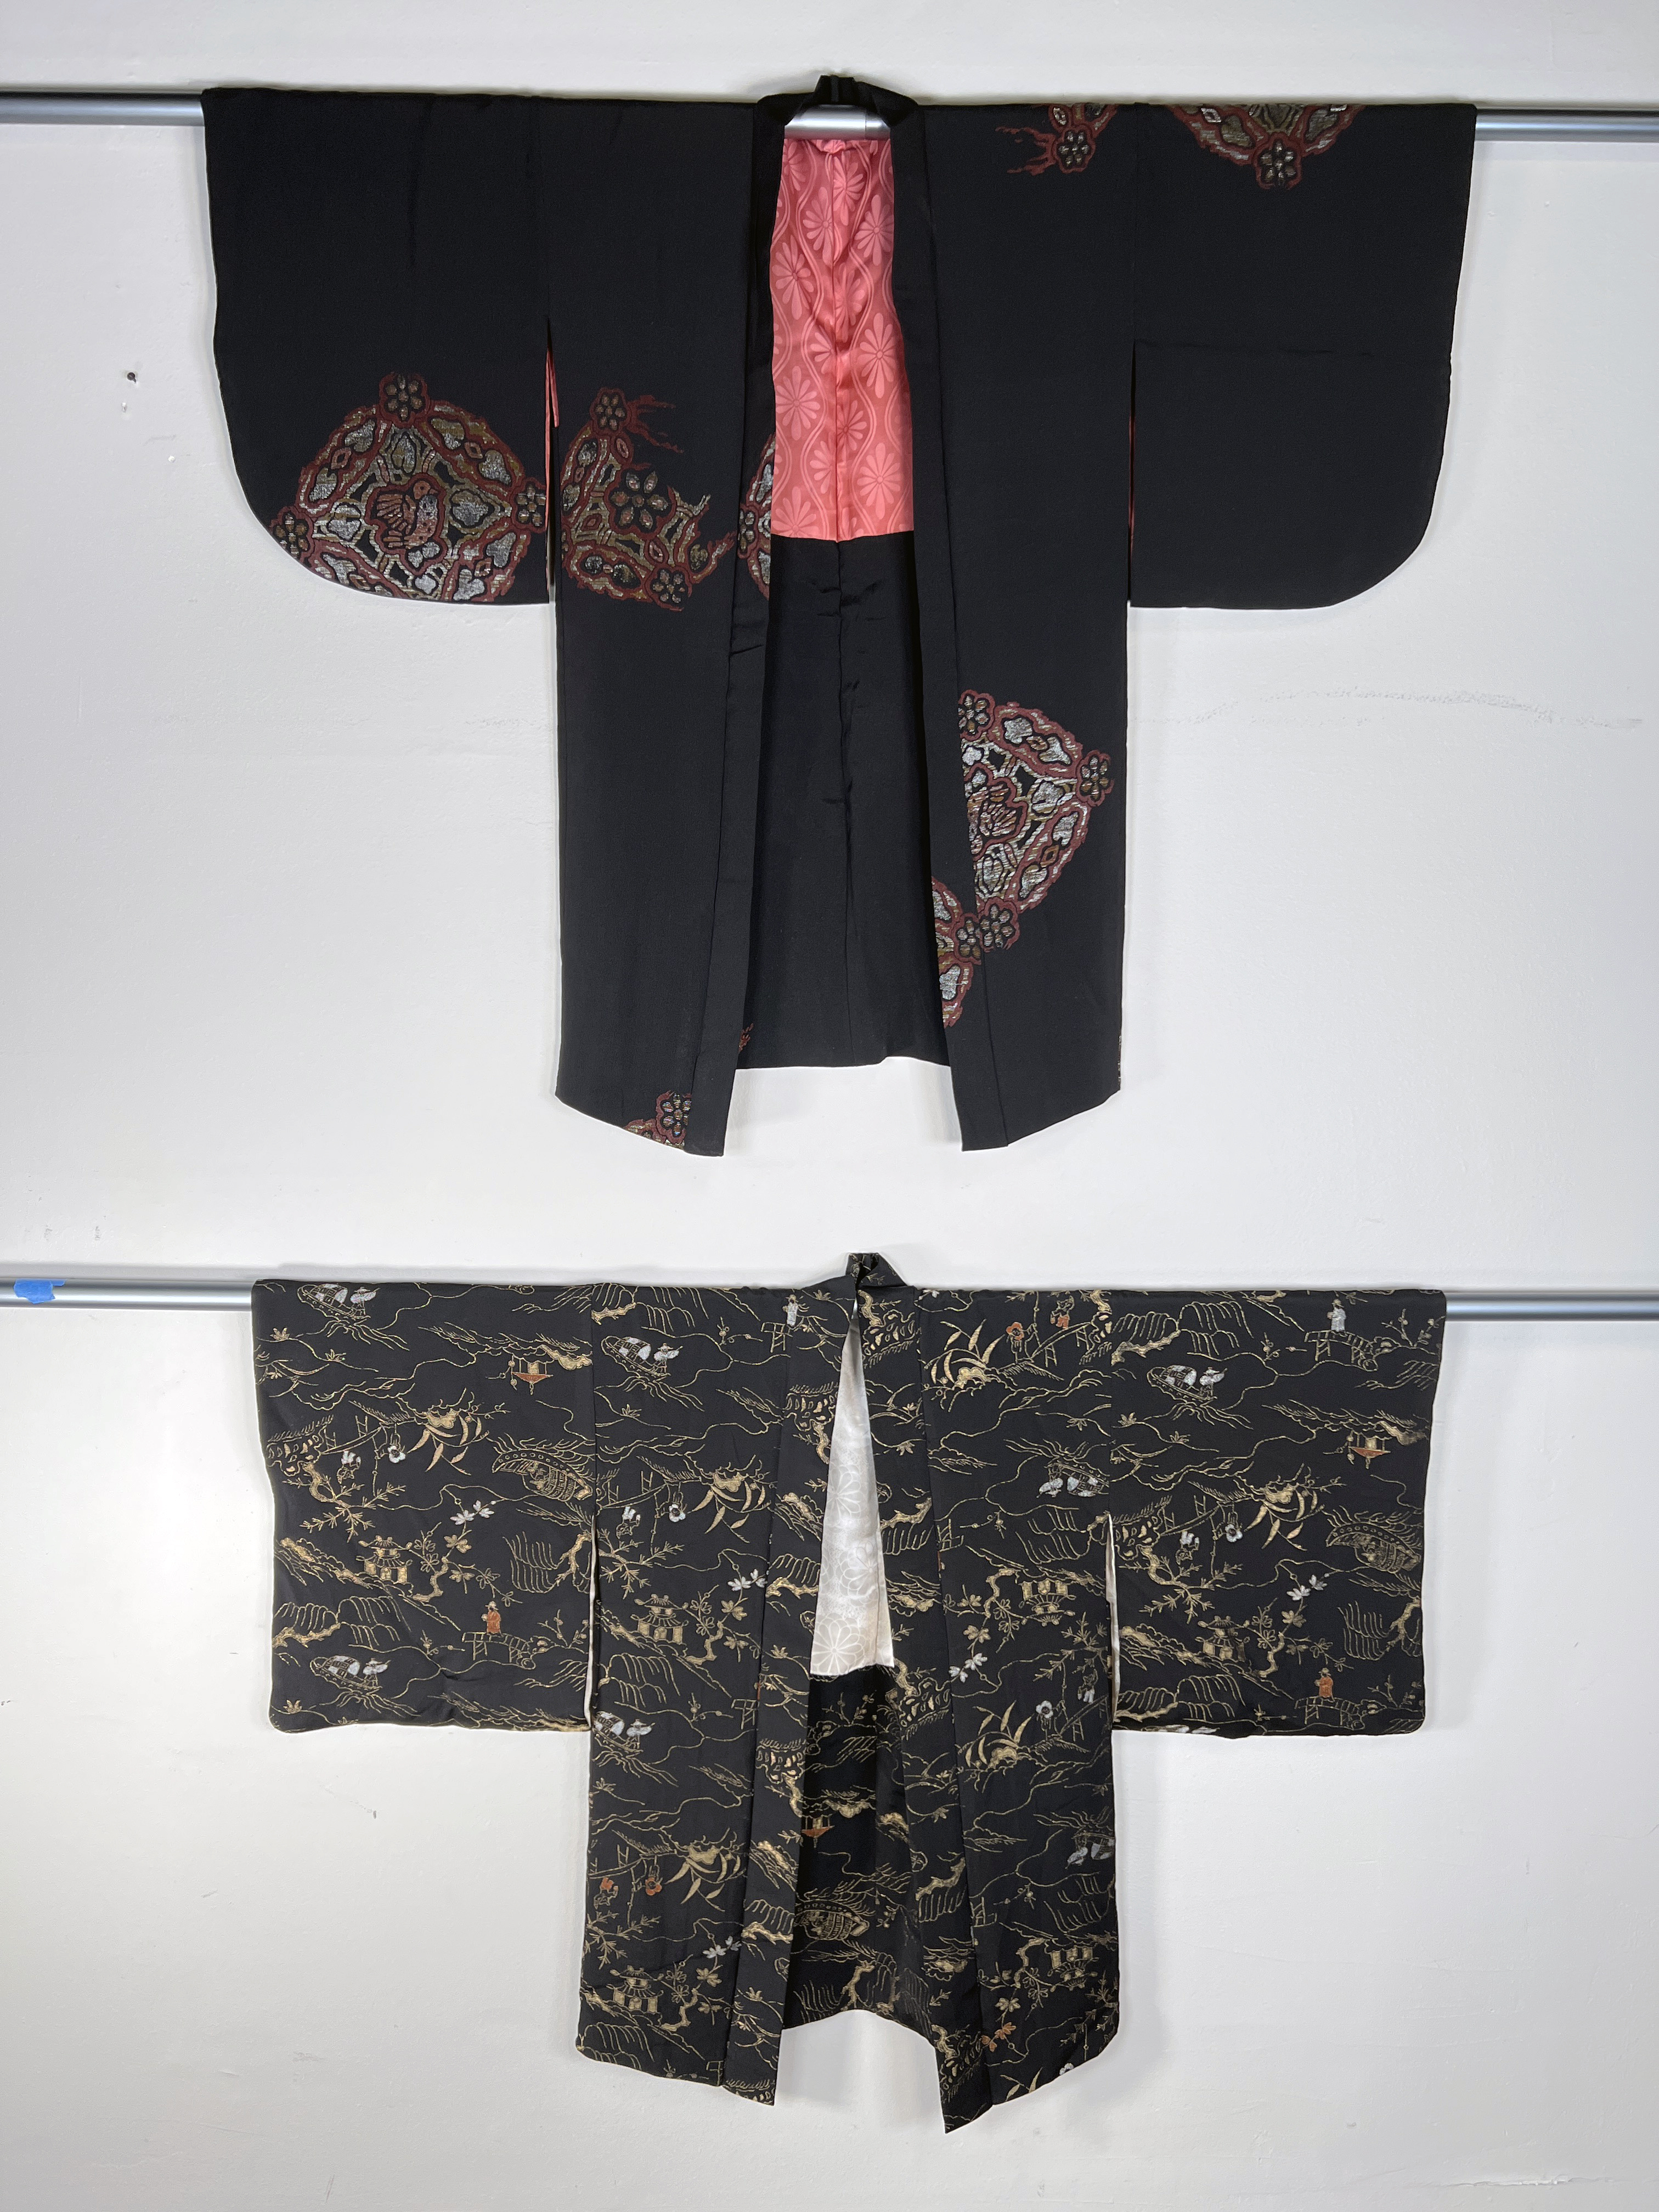 2 Vintage Japanese Kimonos Haoris image 1